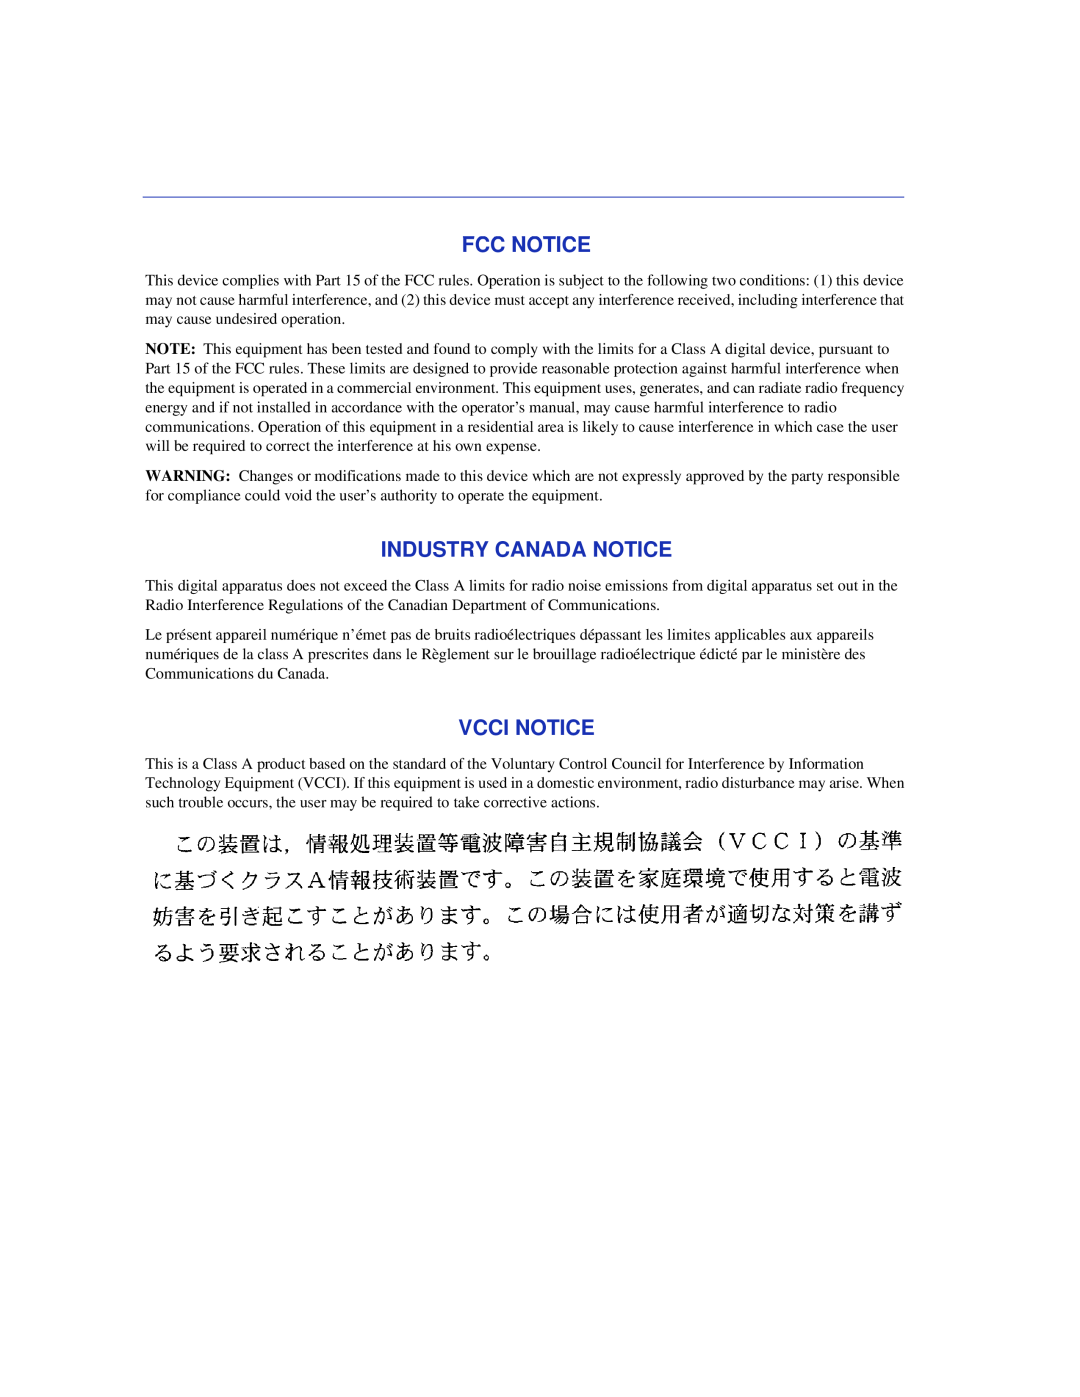 Enterasys Networks 6H352-25 manual Fcc Notice, Industry Canada Notice, Vcci Notice 